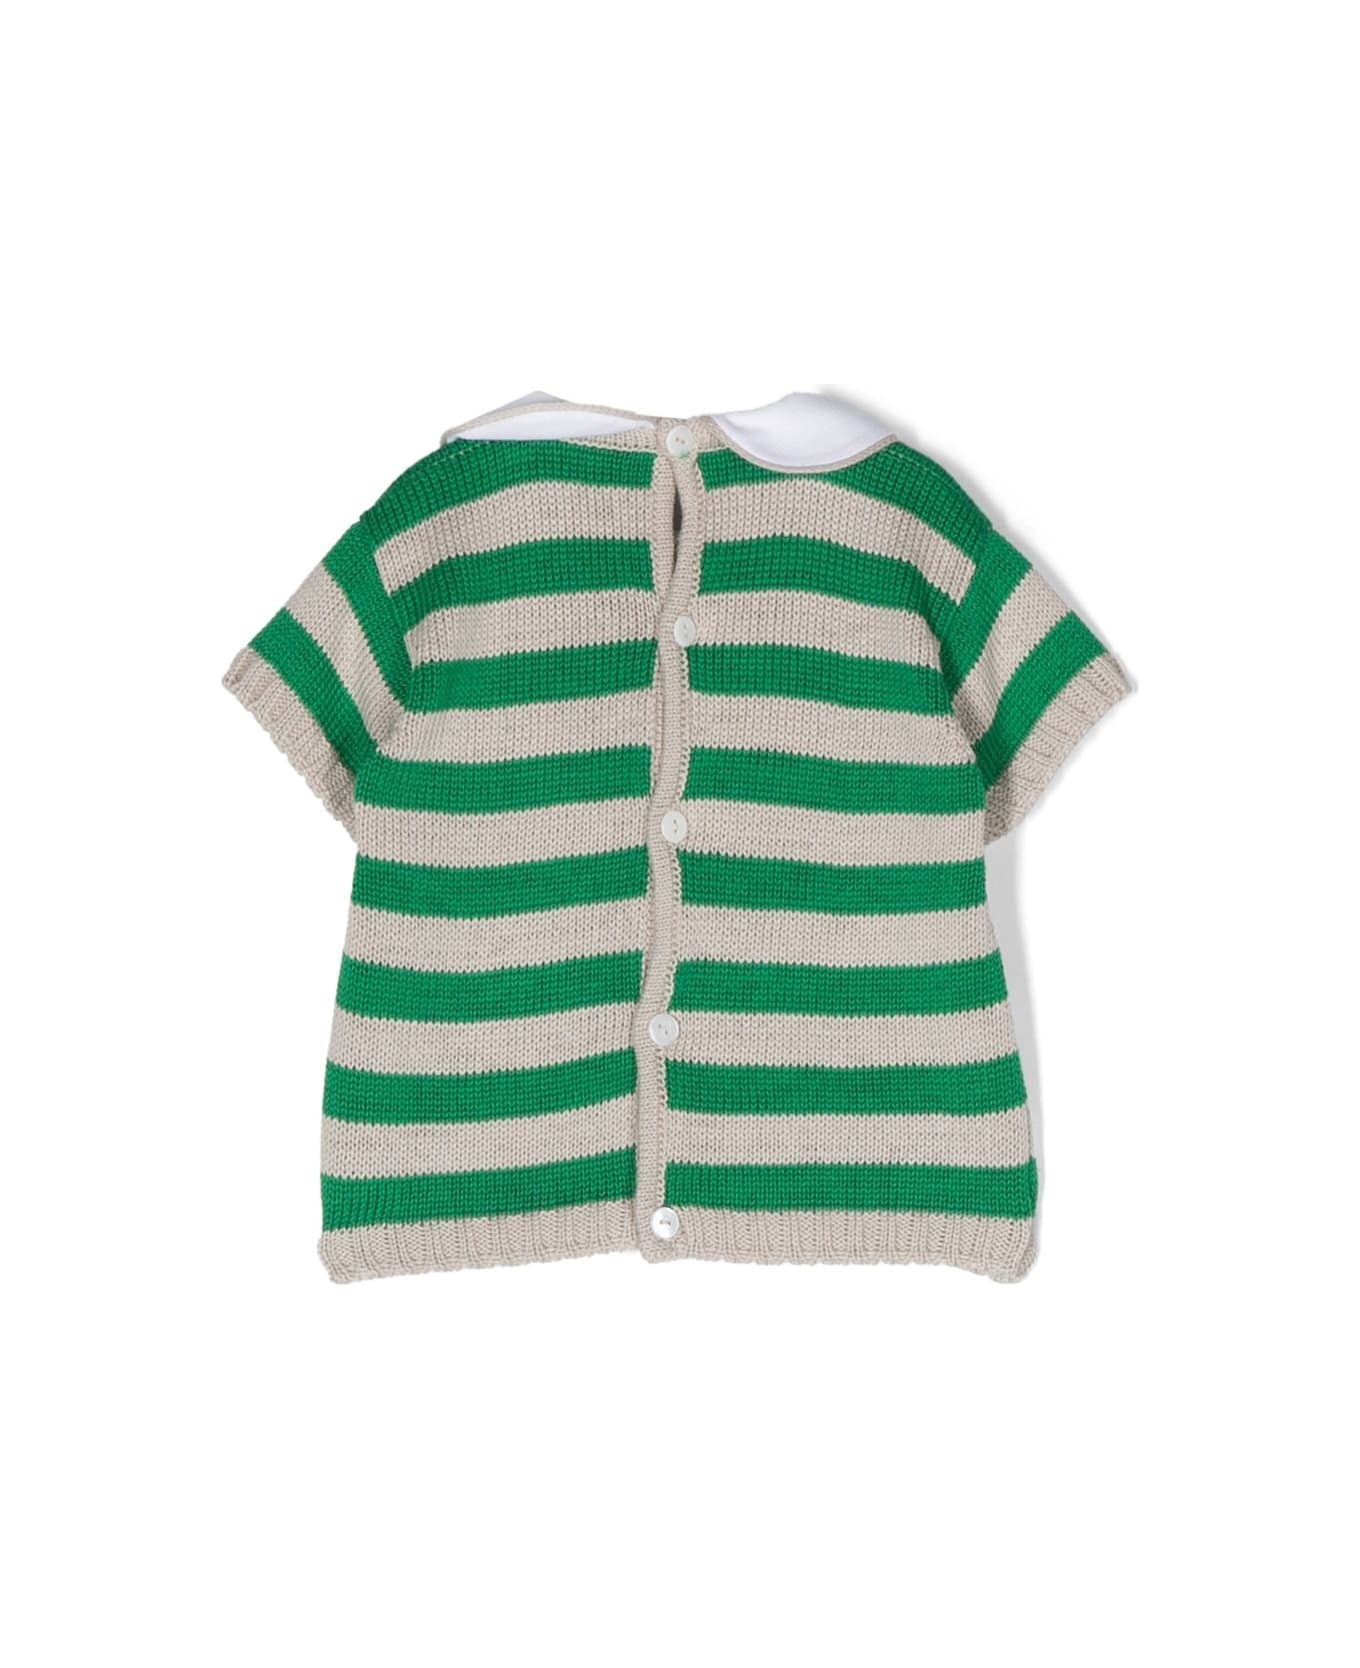 Little Bear Striped Shirt - Green